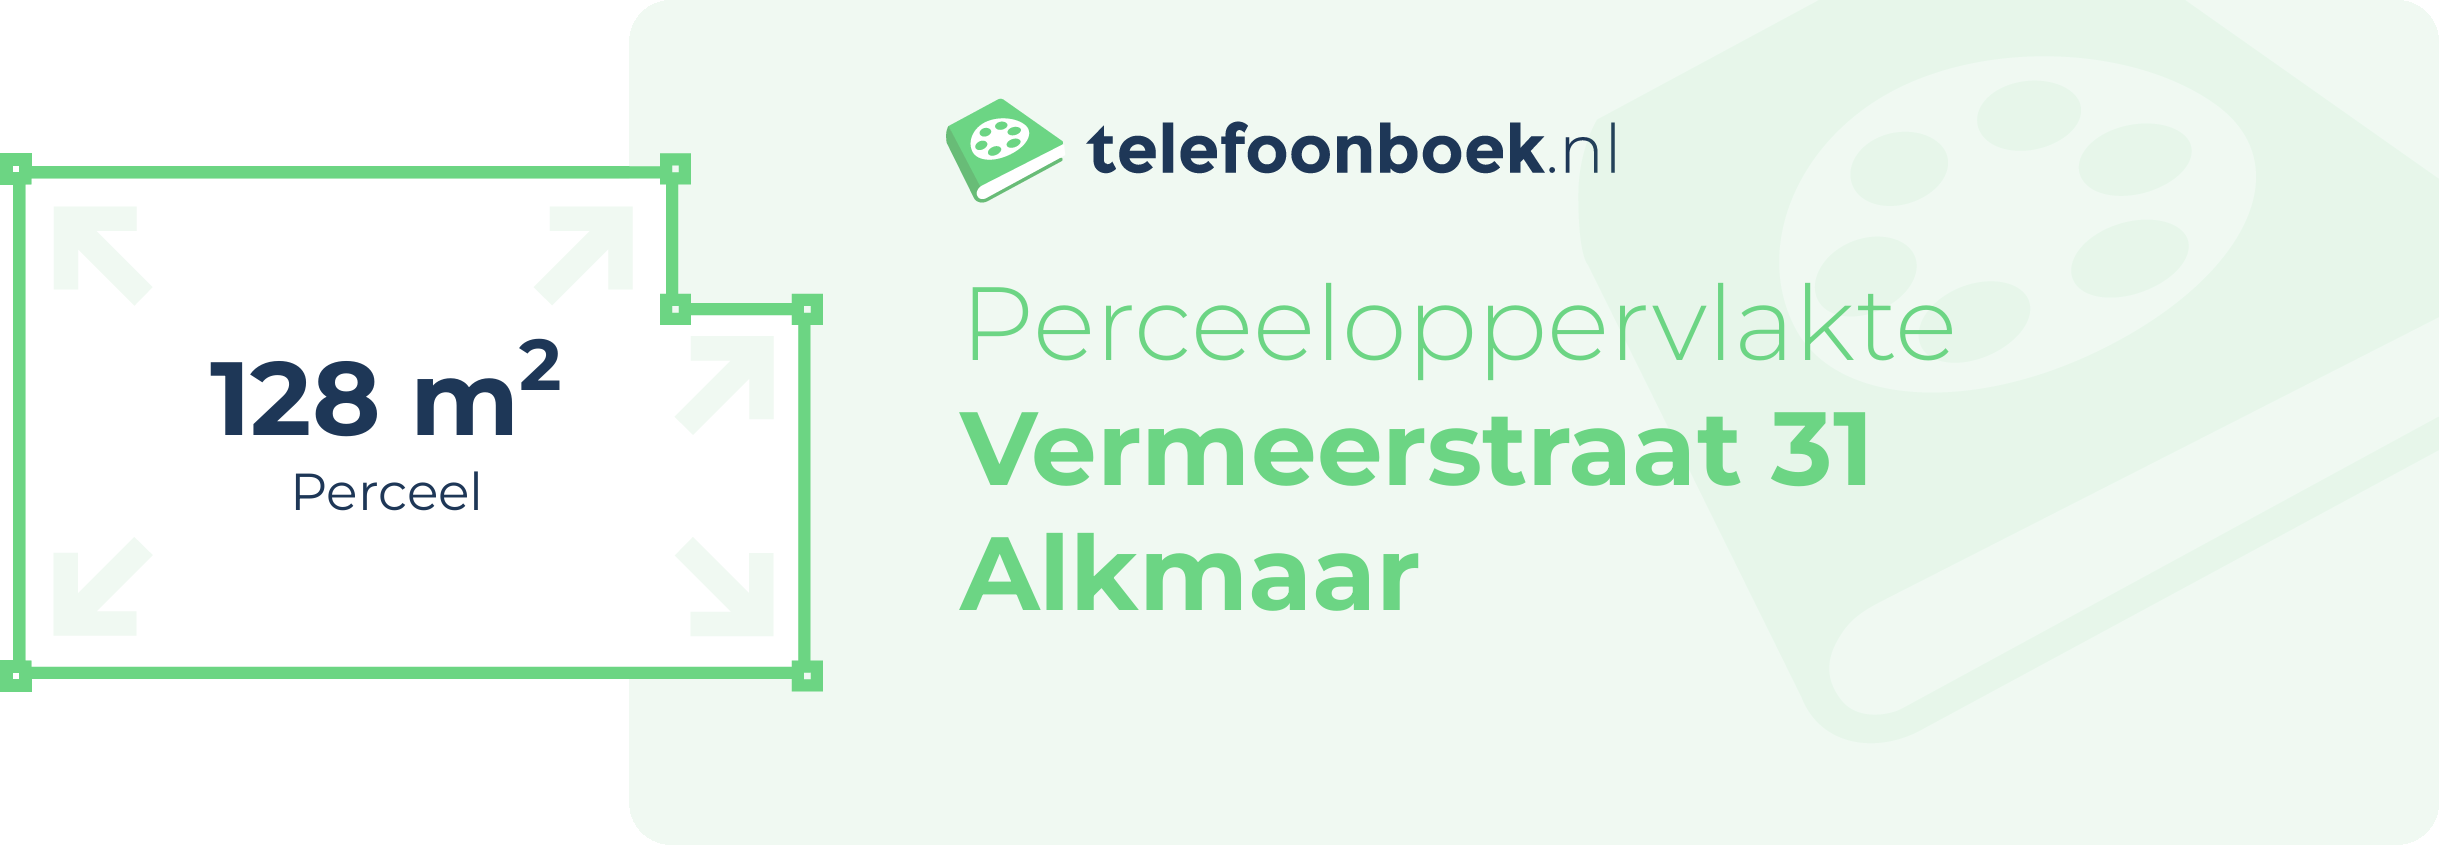 Perceeloppervlakte Vermeerstraat 31 Alkmaar